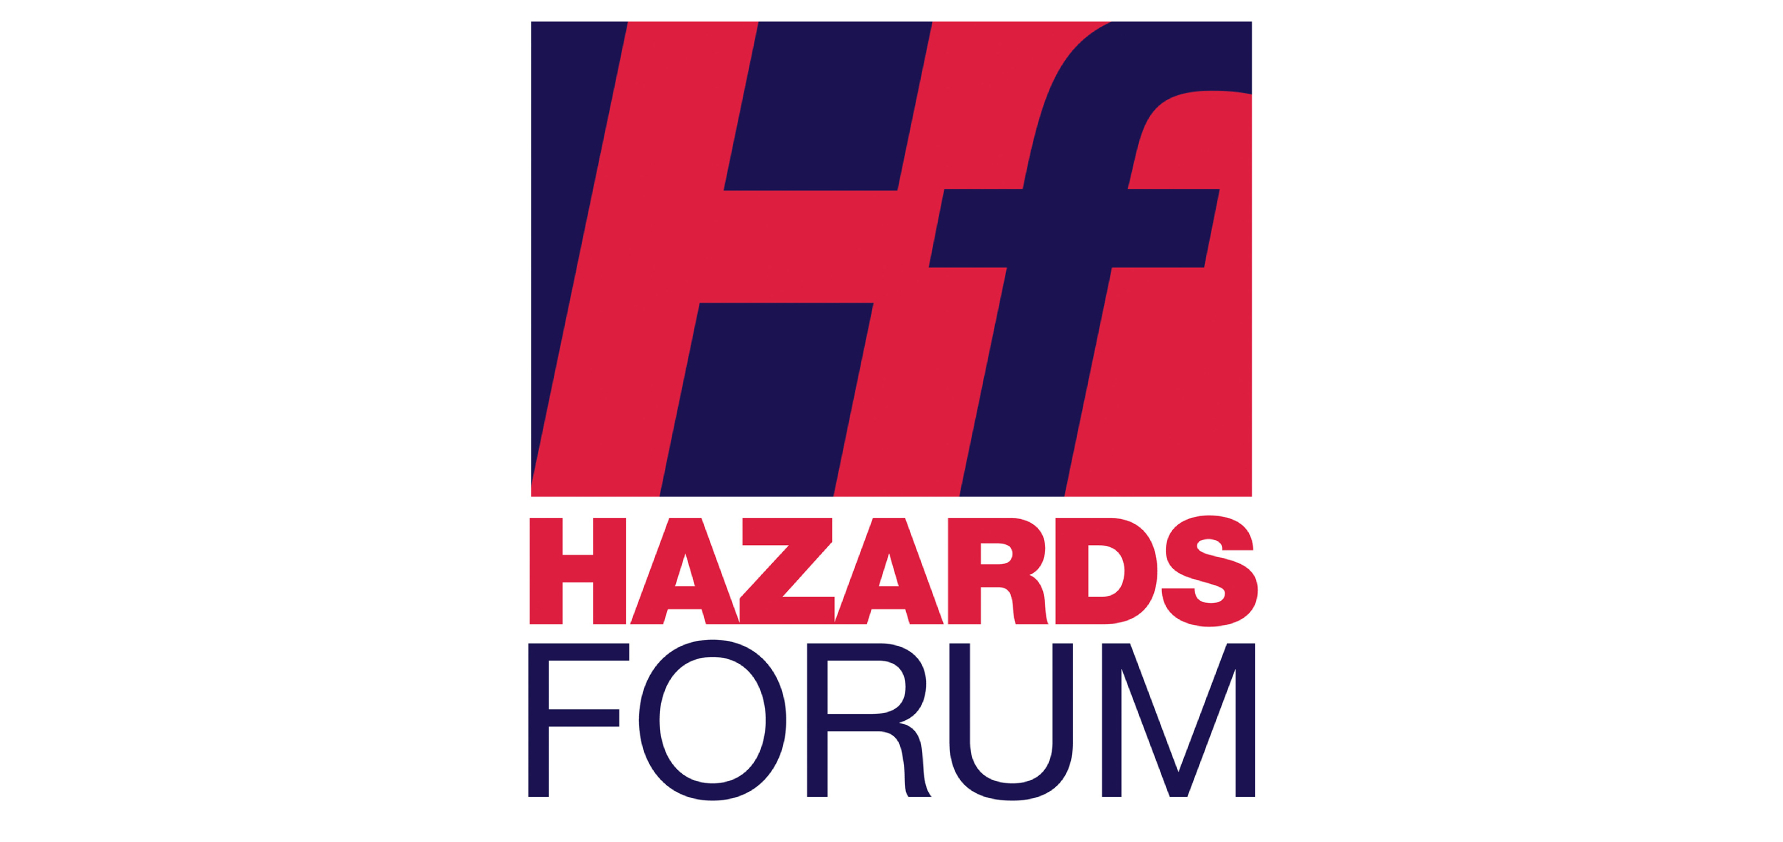 Hazards Forum - HF